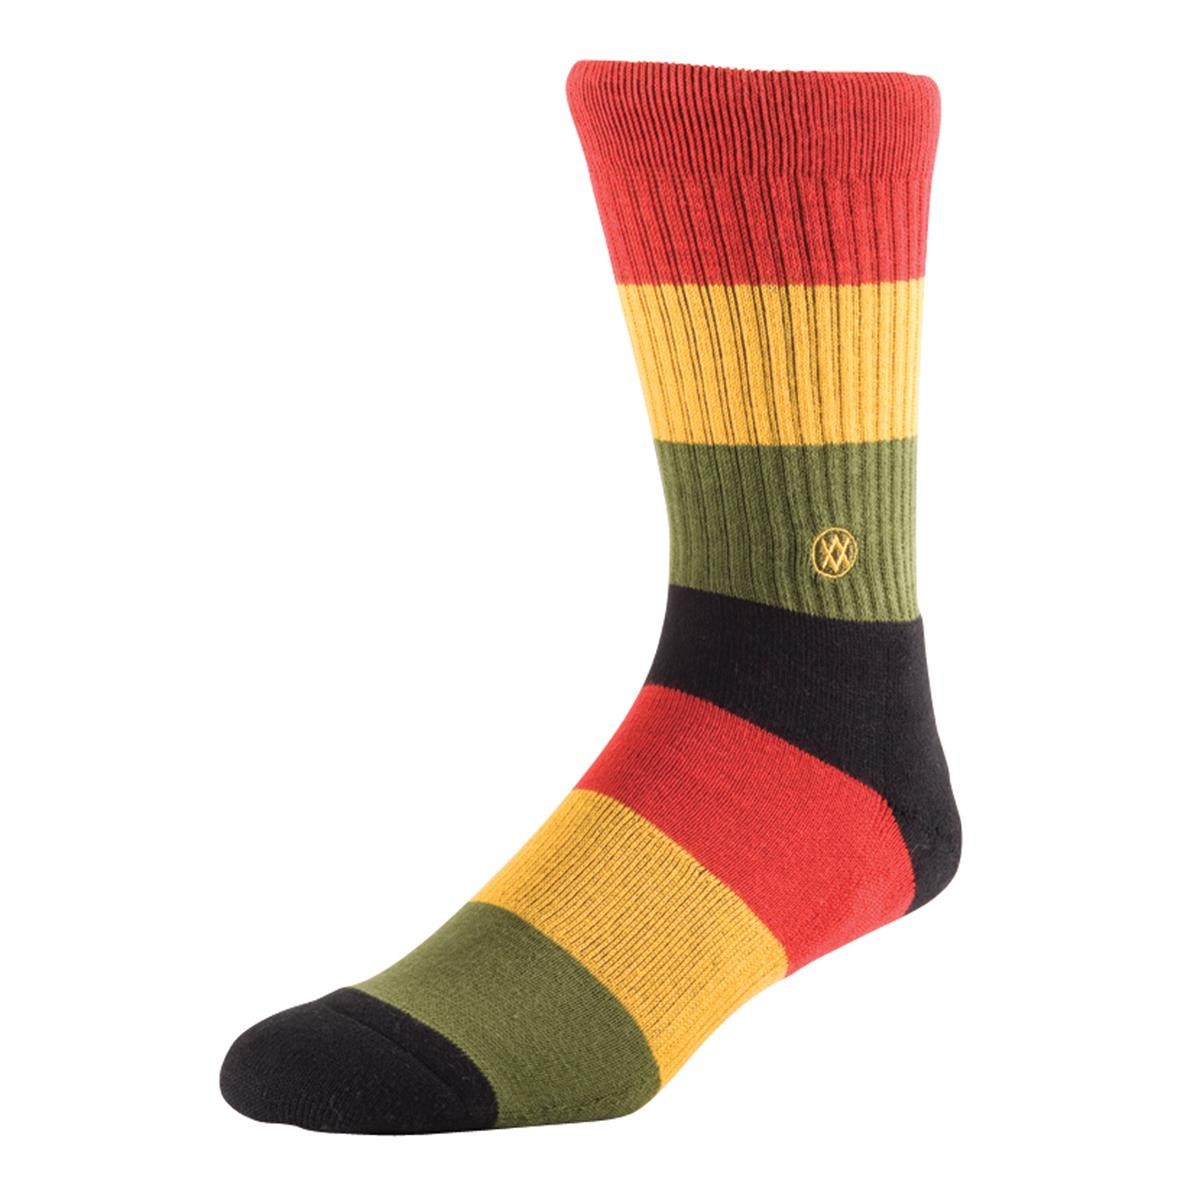 Freizeit/Streetwear Bekleidung-Socken/Strümpfe/Strumpfhosen - Stance Socken Maytal Rasta